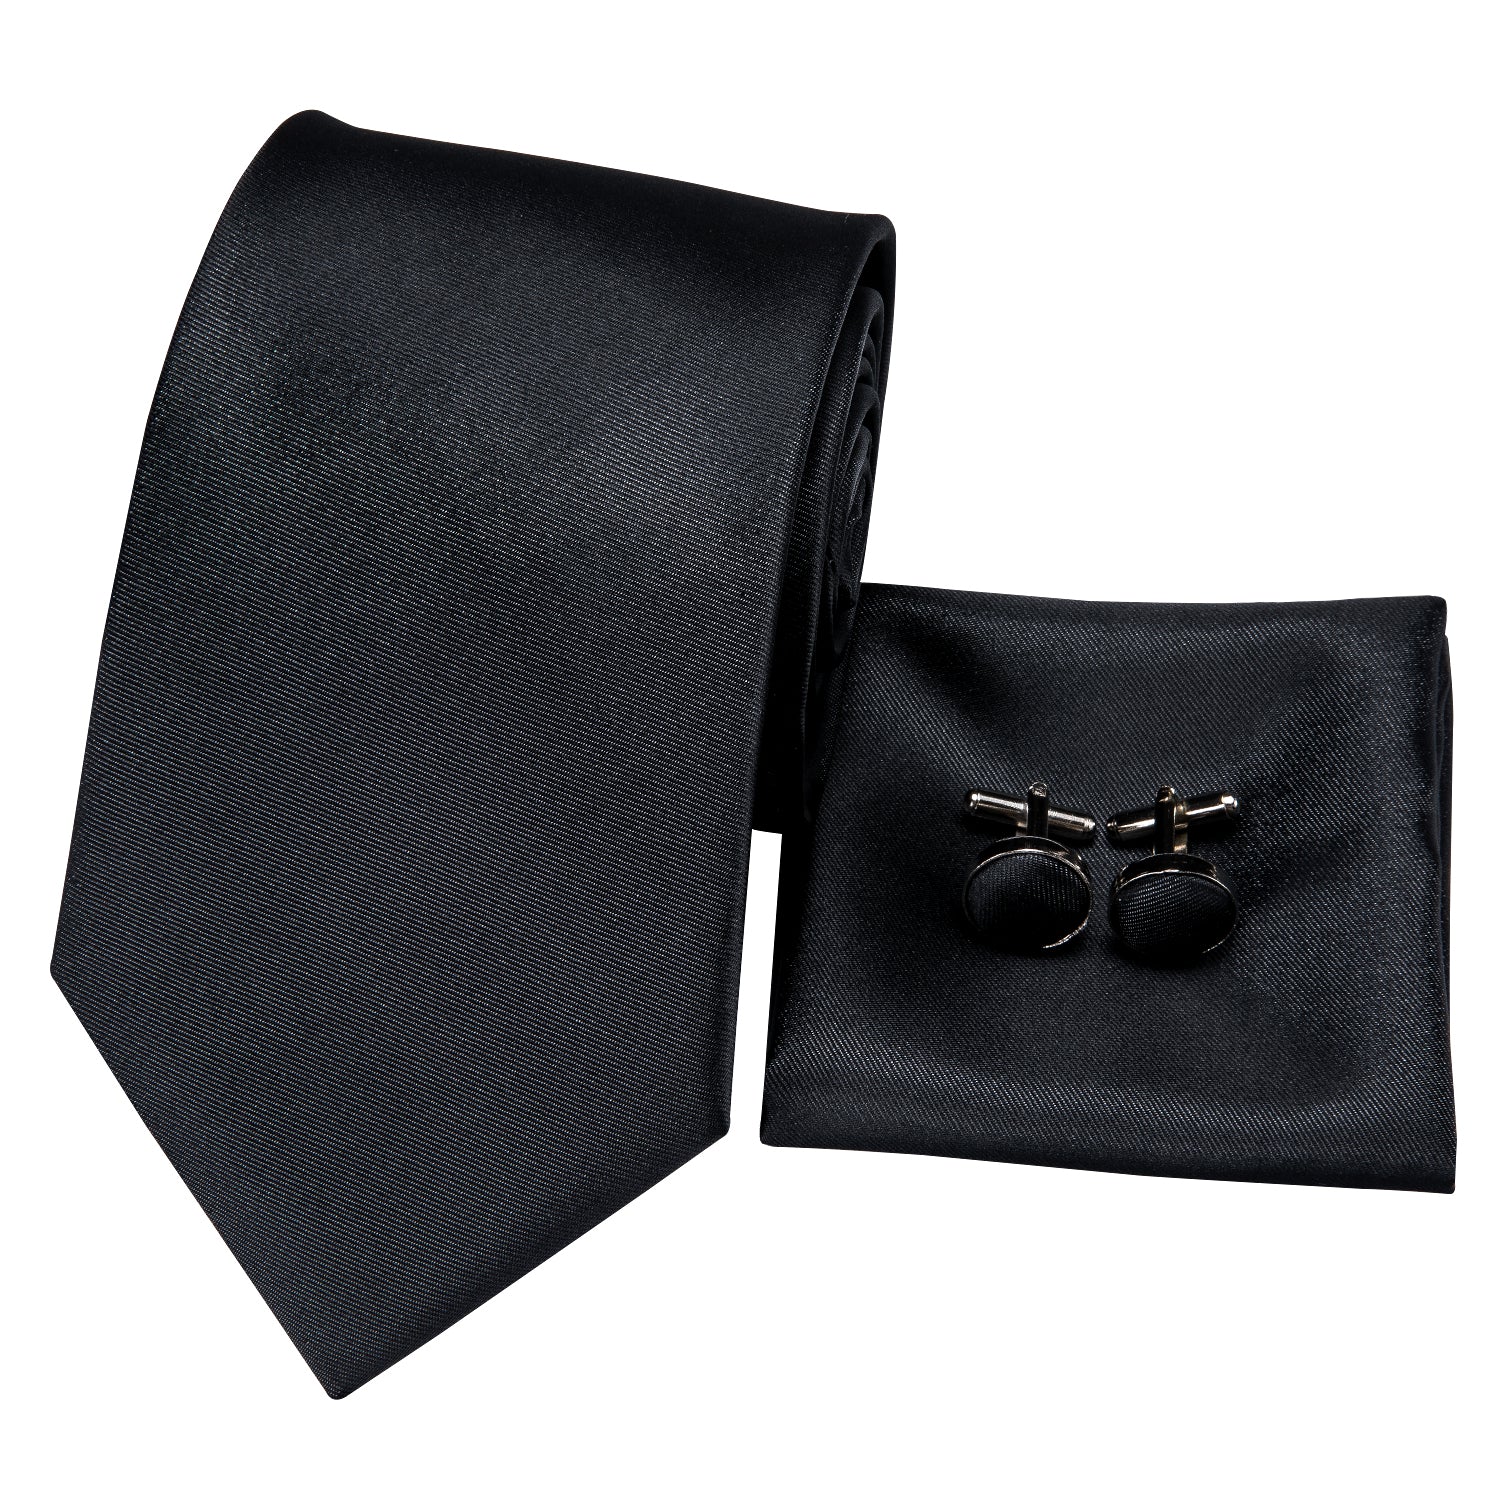  Black Wedding Necktie Solid Men Tie Pocket Square Cufflinks Set